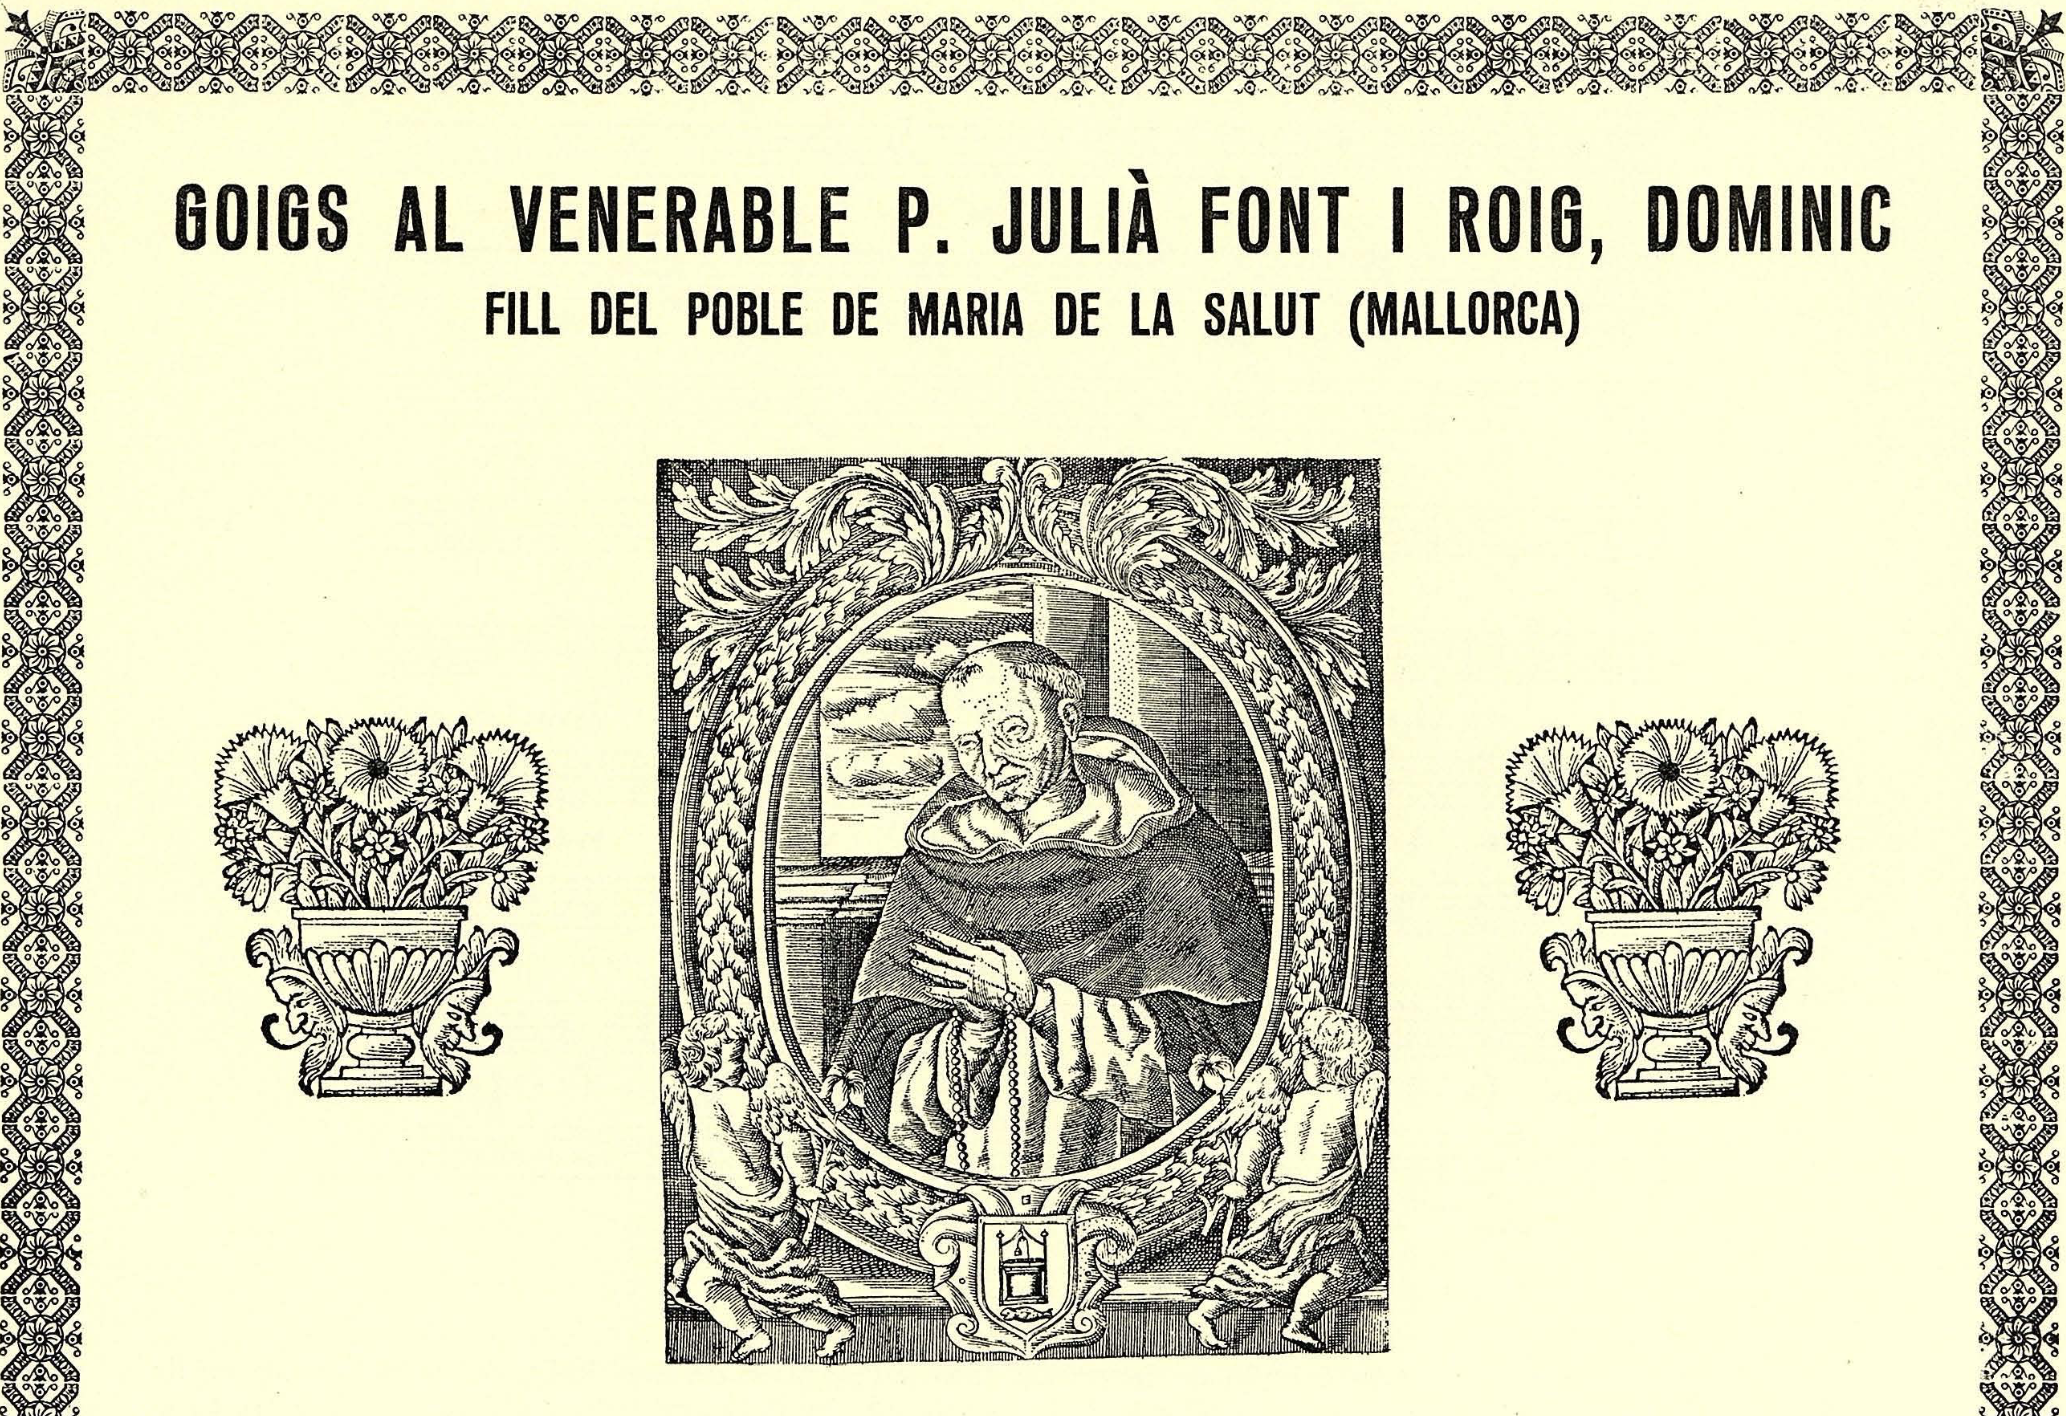 Goigs dedicats a Julià Font i Roig